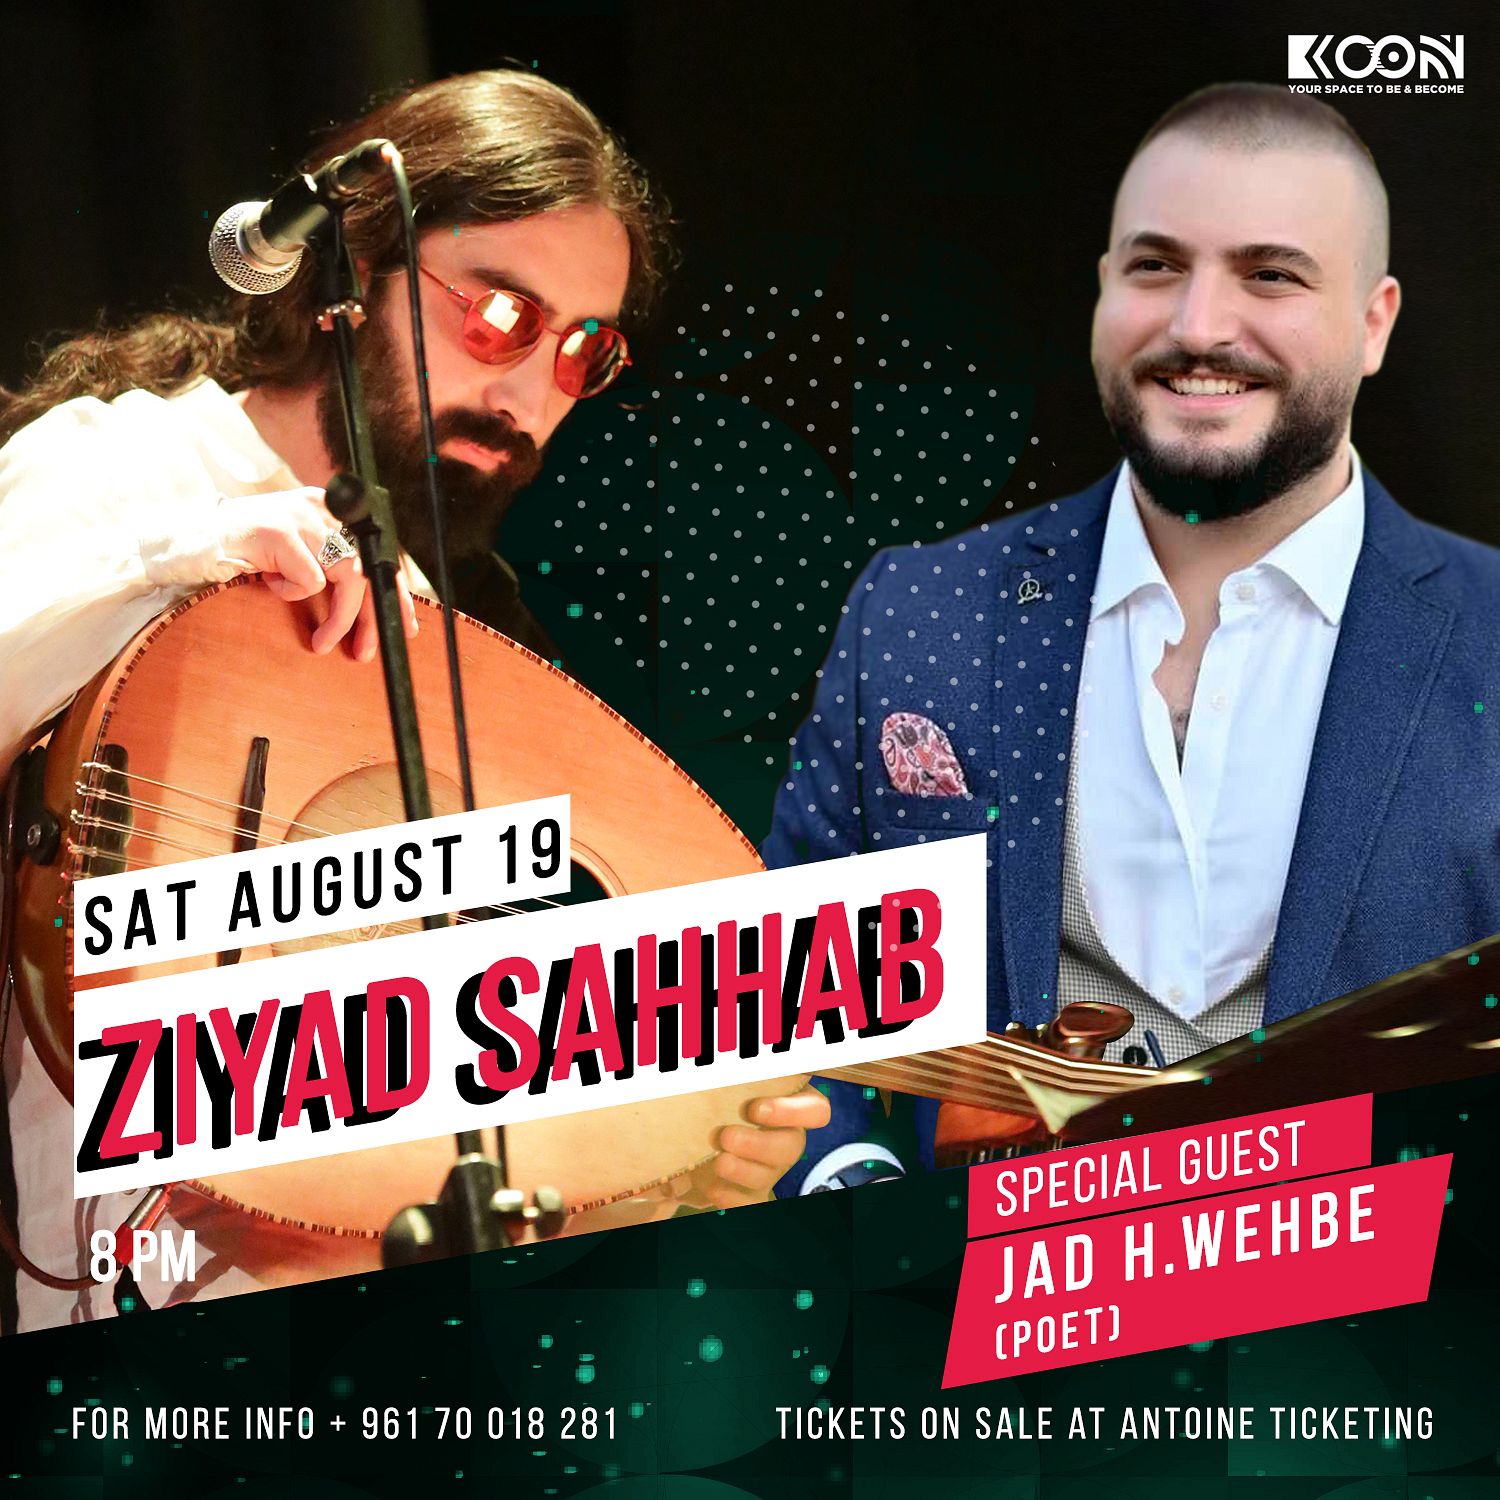 Ziyad Sahhab and his band thumbnail